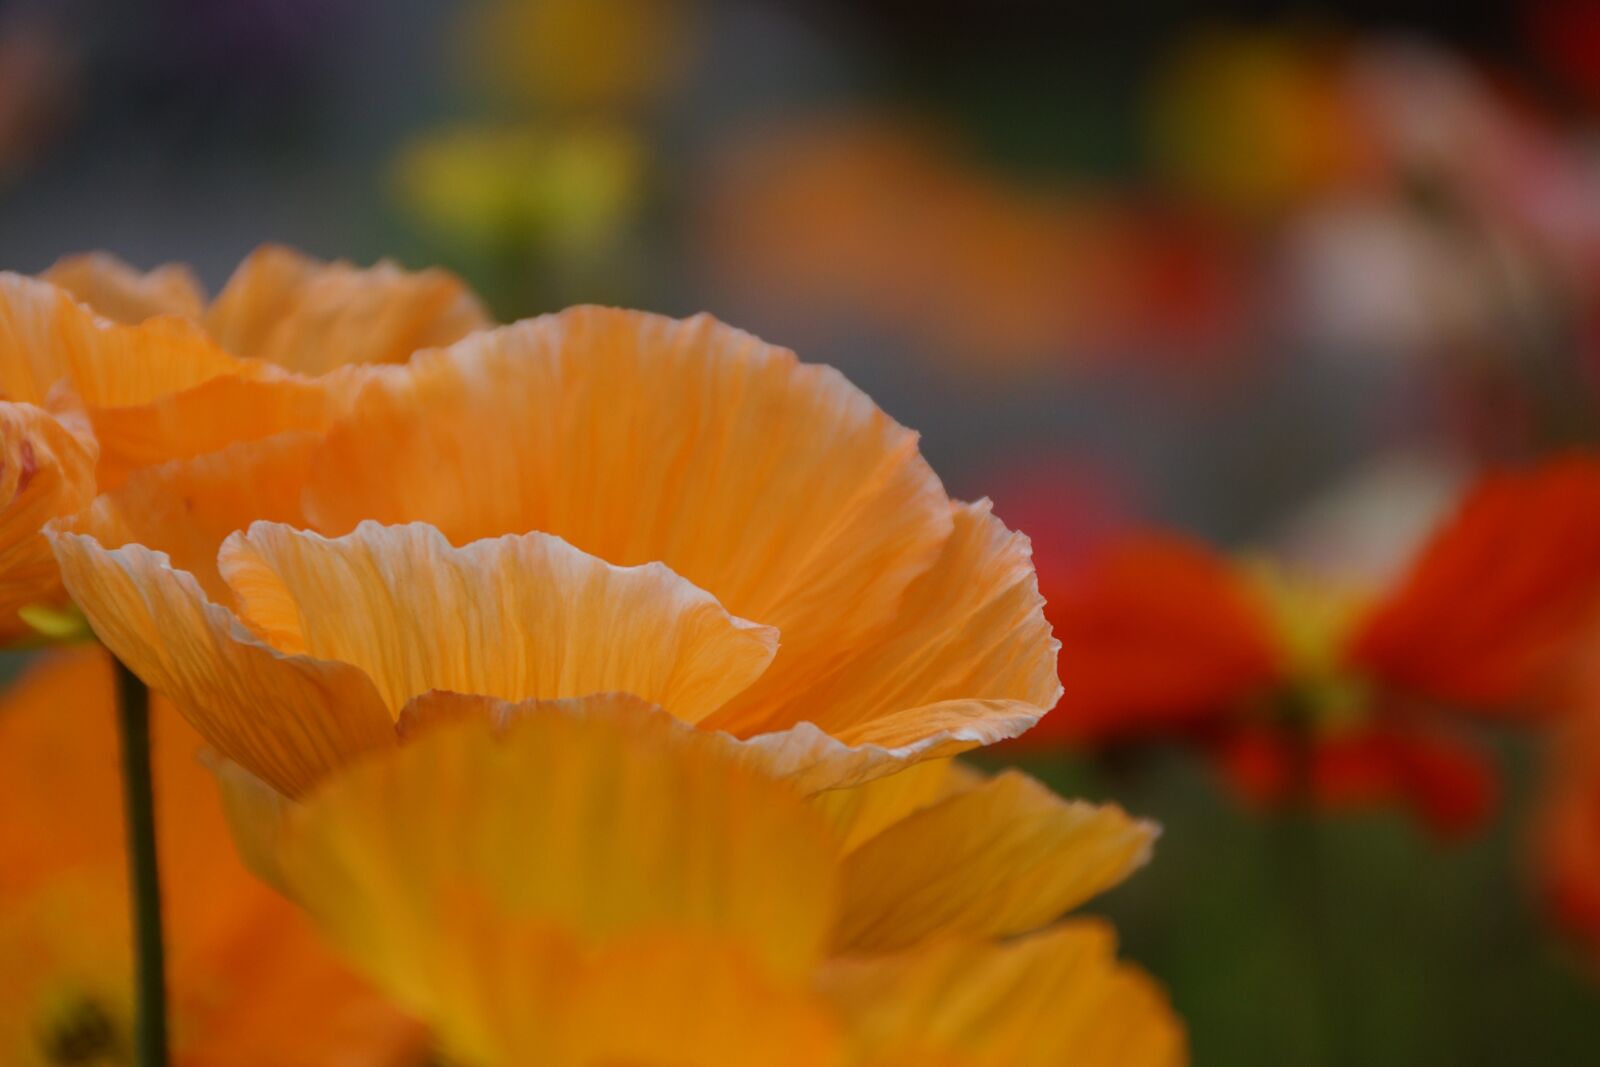 Sony SLT-A77 + Sony DT 18-250mm F3.5-6.3 sample photo. Orange, poppy, flower photography